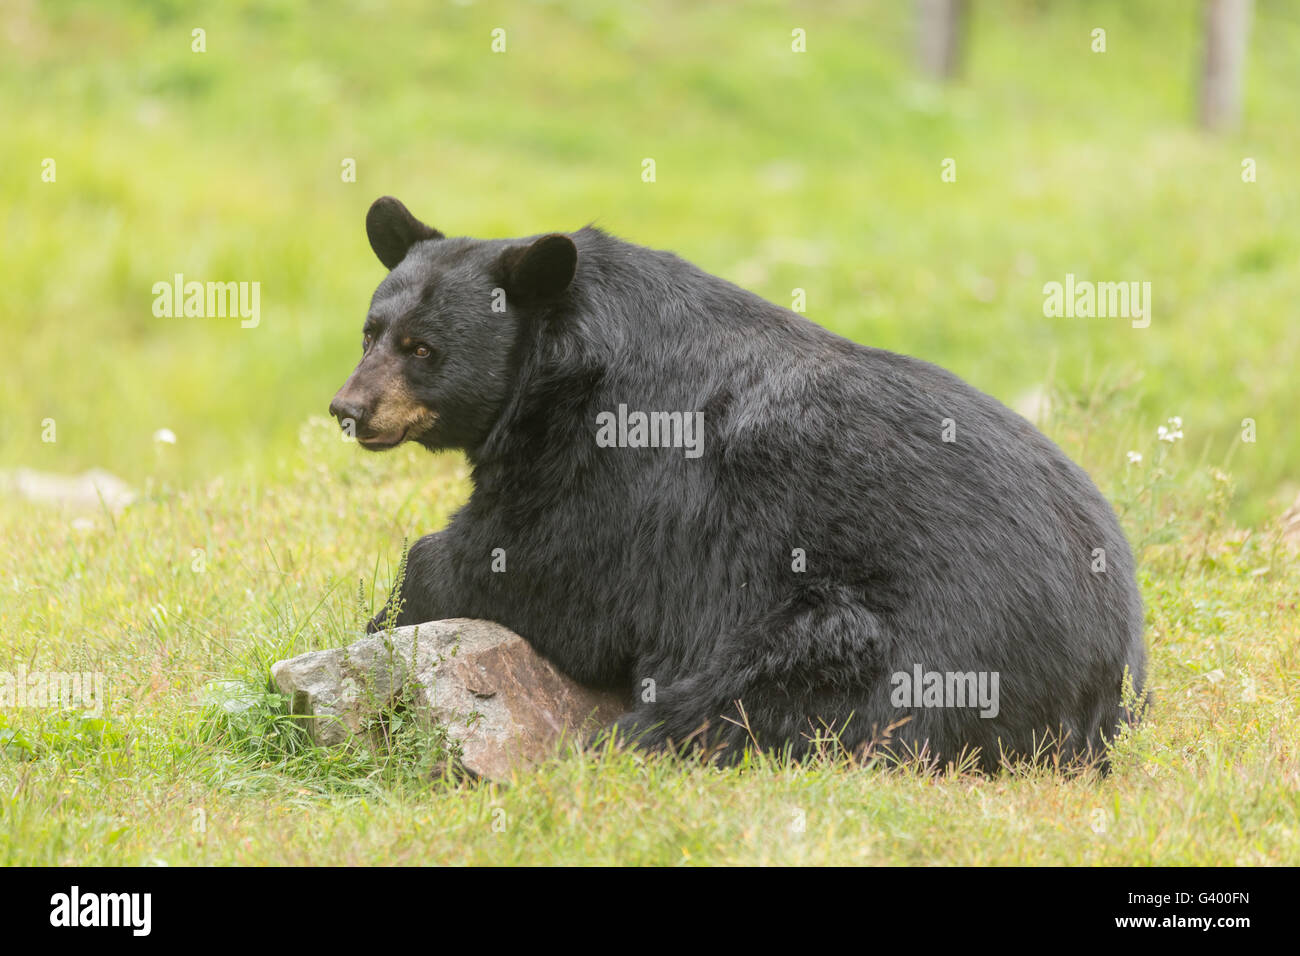 Gran oso negro en el verano Foto de stock